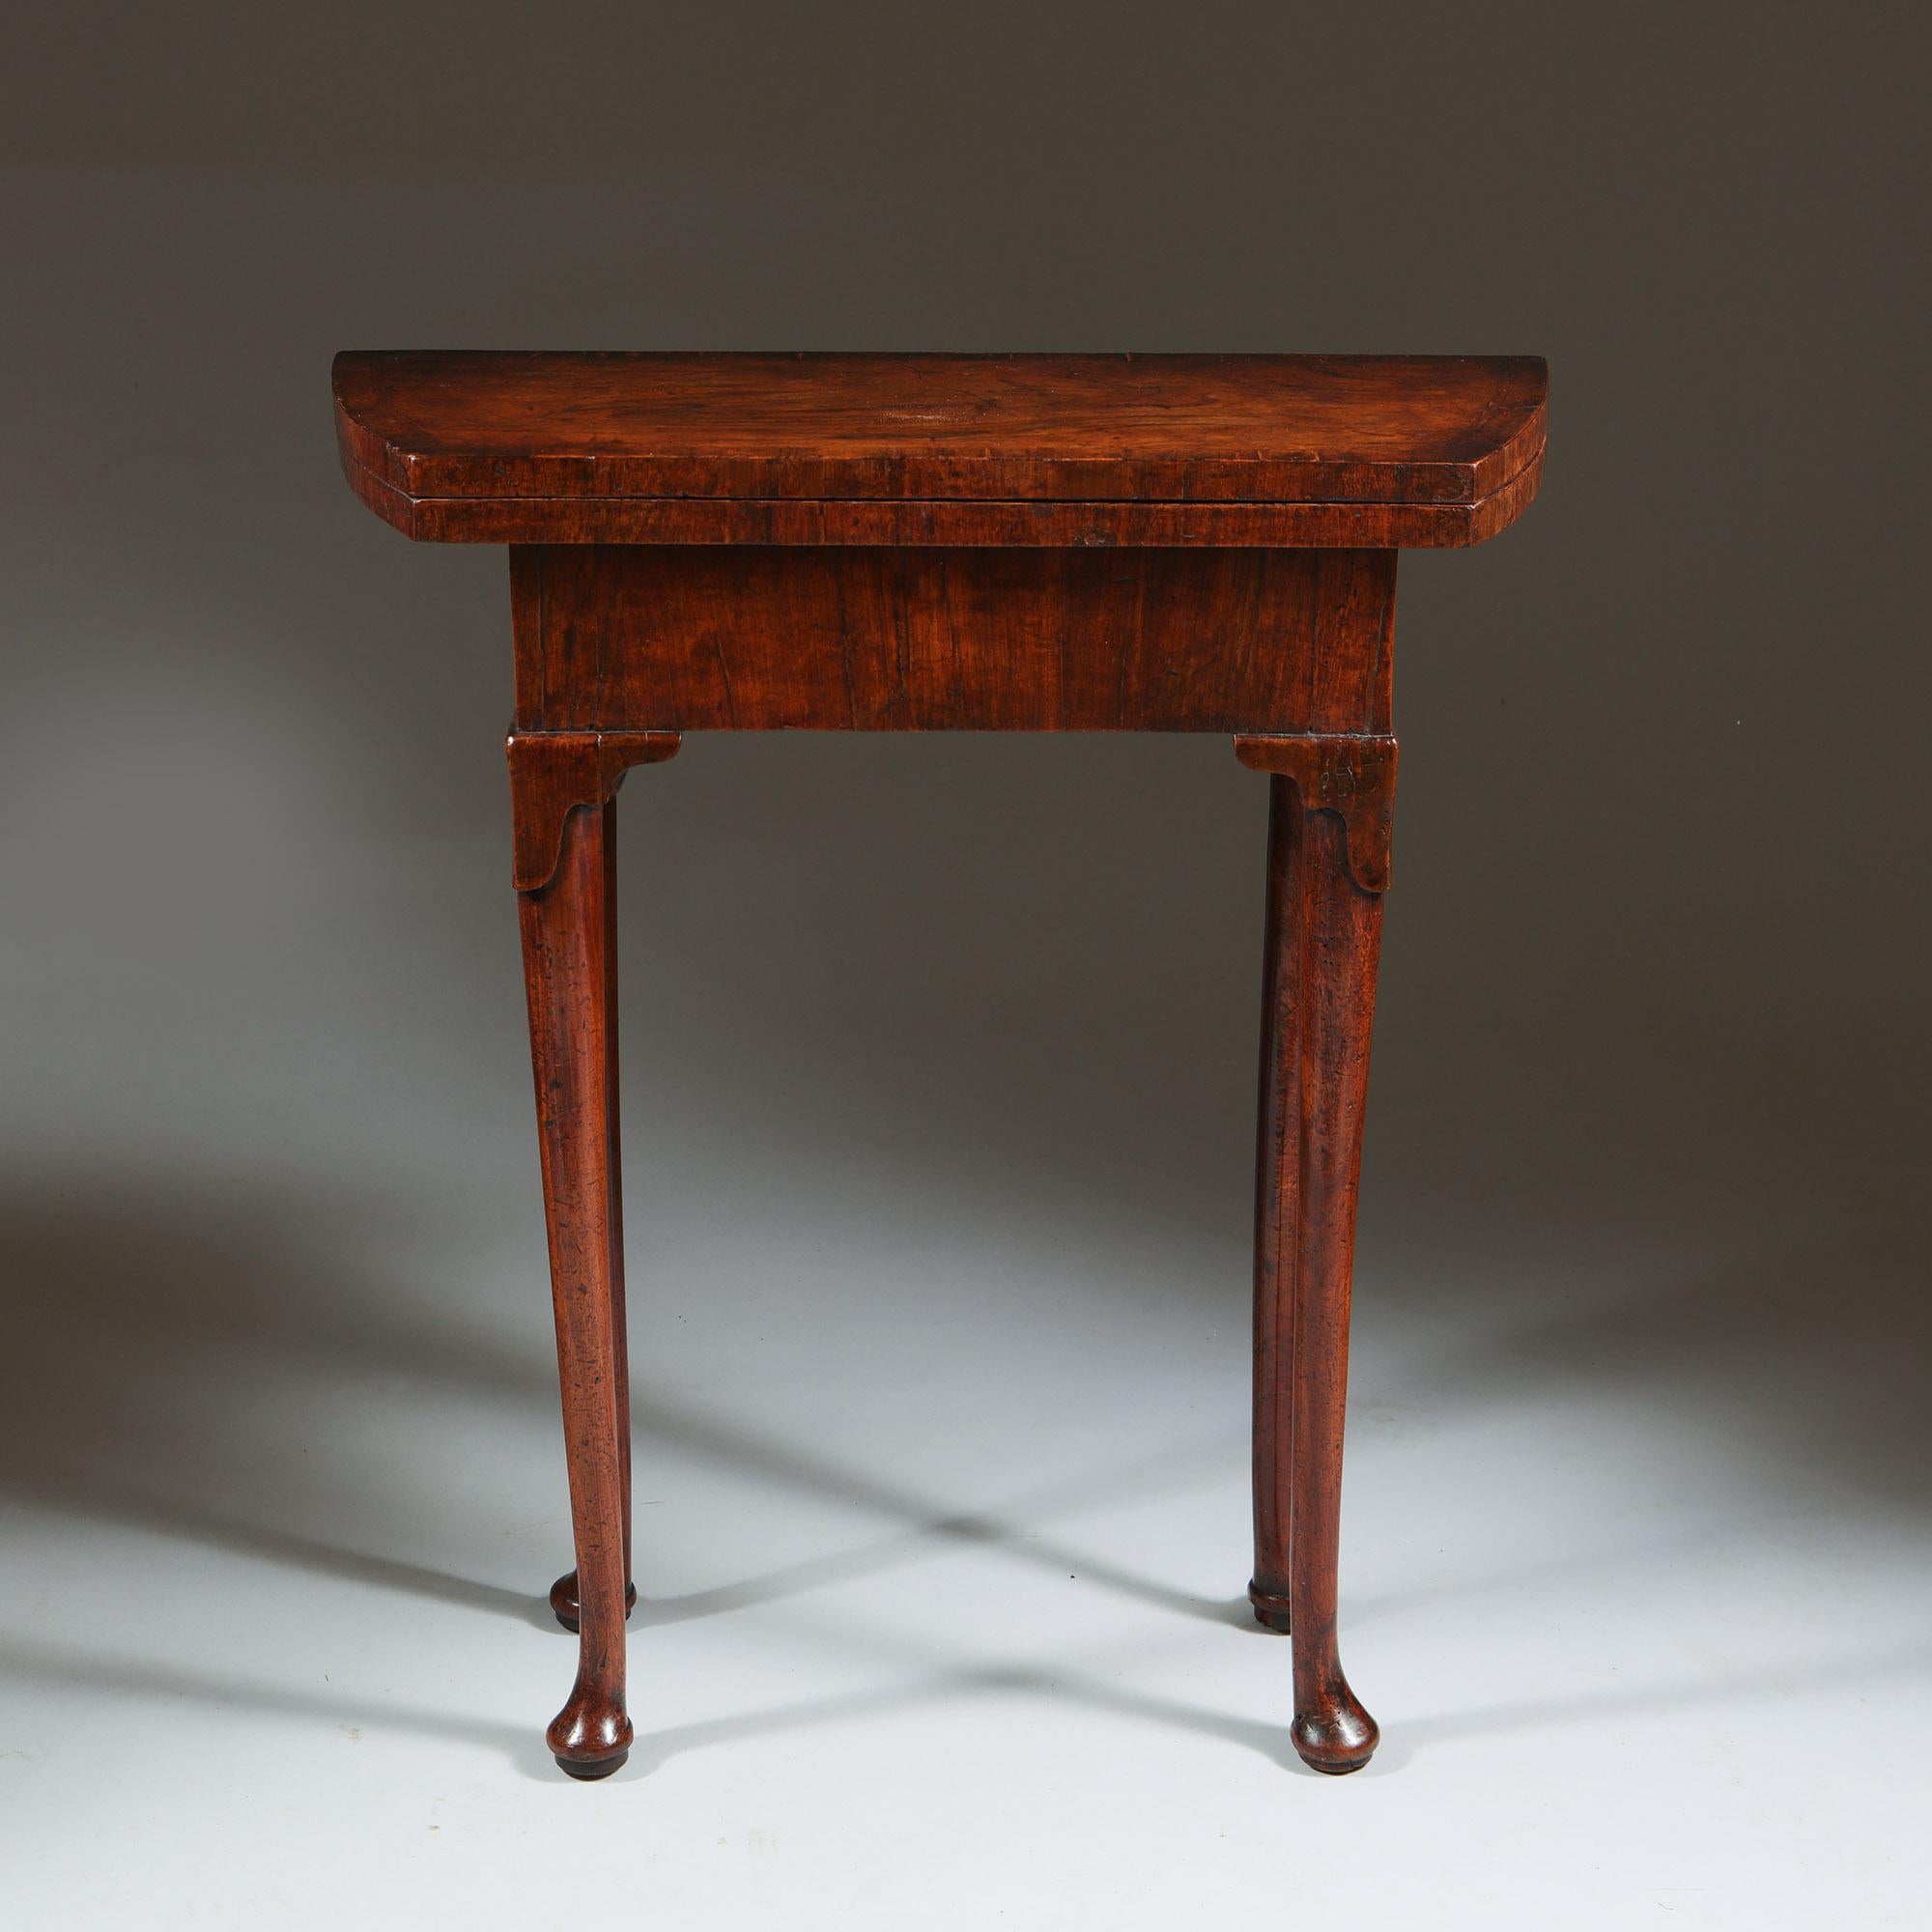 Einzigartiger Zwerchfell-Bachelor-Tisch aus Nussbaum mit Figuren aus dem frühen 18. Jahrhundert, CIRCA 1720-1730

Der Tisch ist von sehr seltenen, zierlichen Proportionen und steht auf schlanken, geraden Beinen mit geschnitzten Knien, die auf